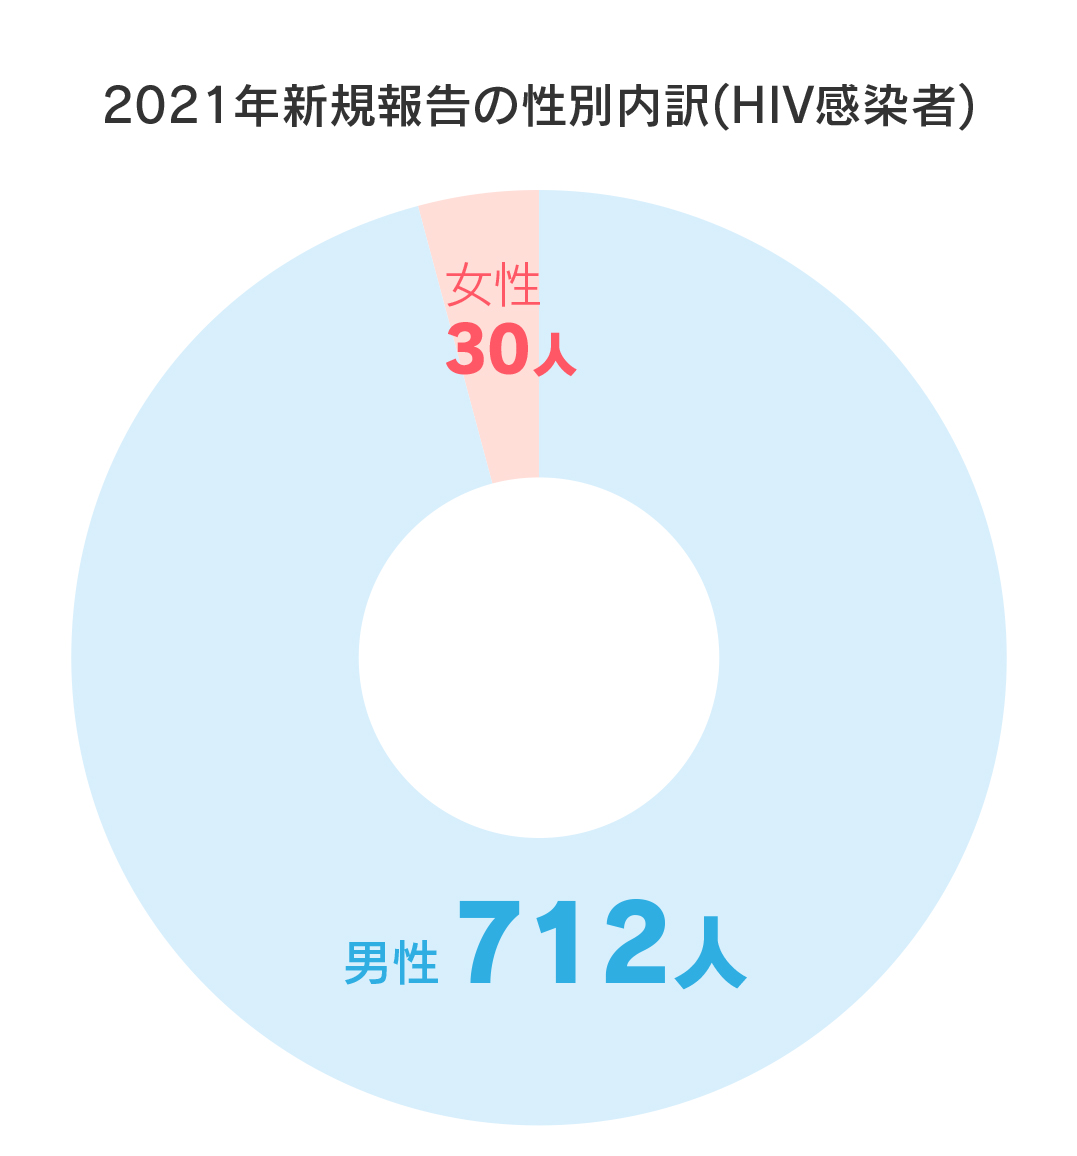 2021年新規報告の性別内訳(HIV感染者)男性712人、女性30人